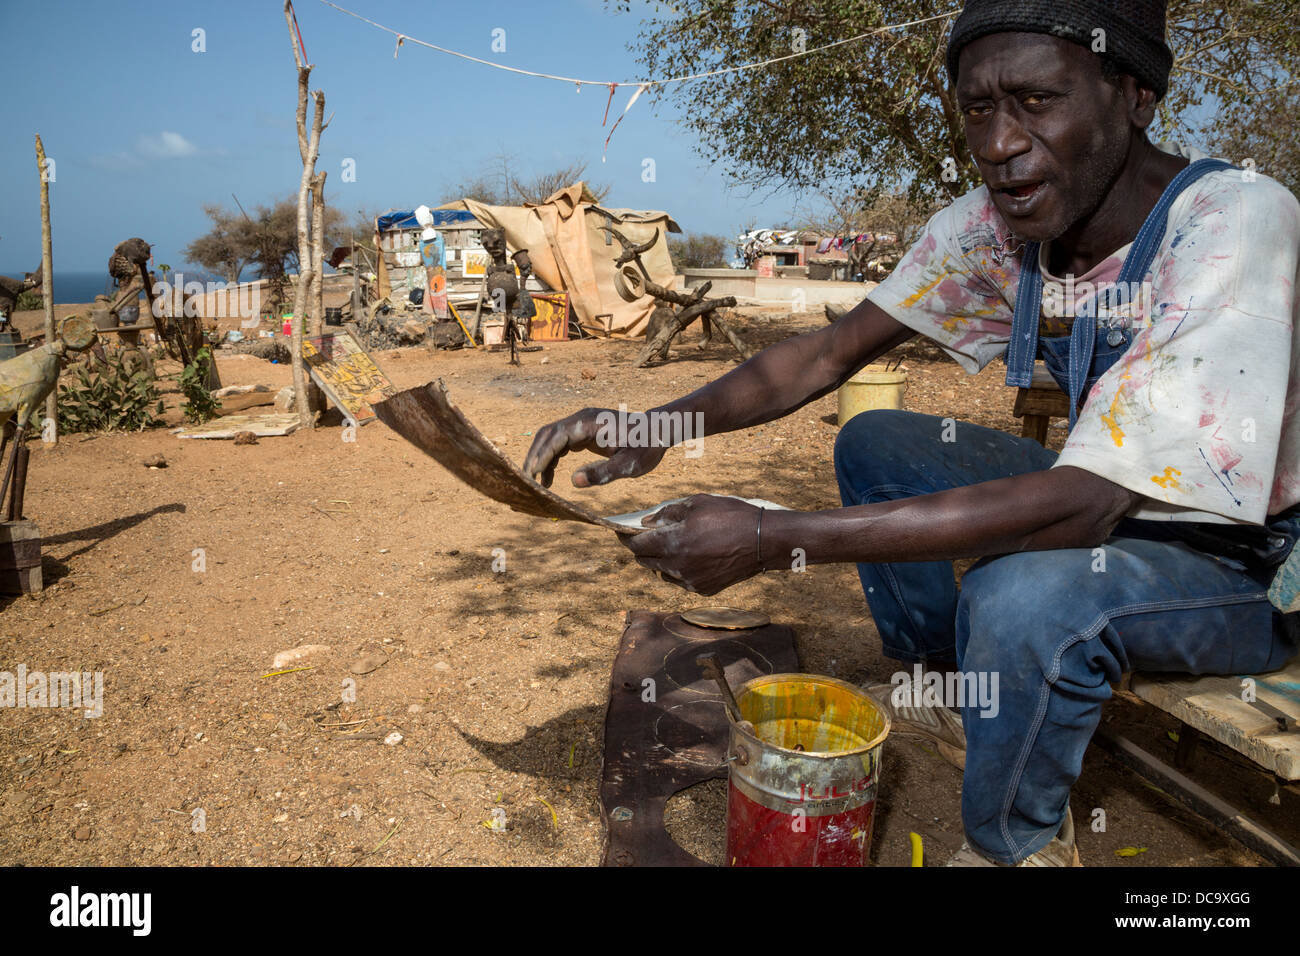 Artista Amadou Dieng demostrando cómo trabaja con objetos encontrados y recuperados para hacer sus construcciones. La Isla de Gorée en Senegal. Foto de stock